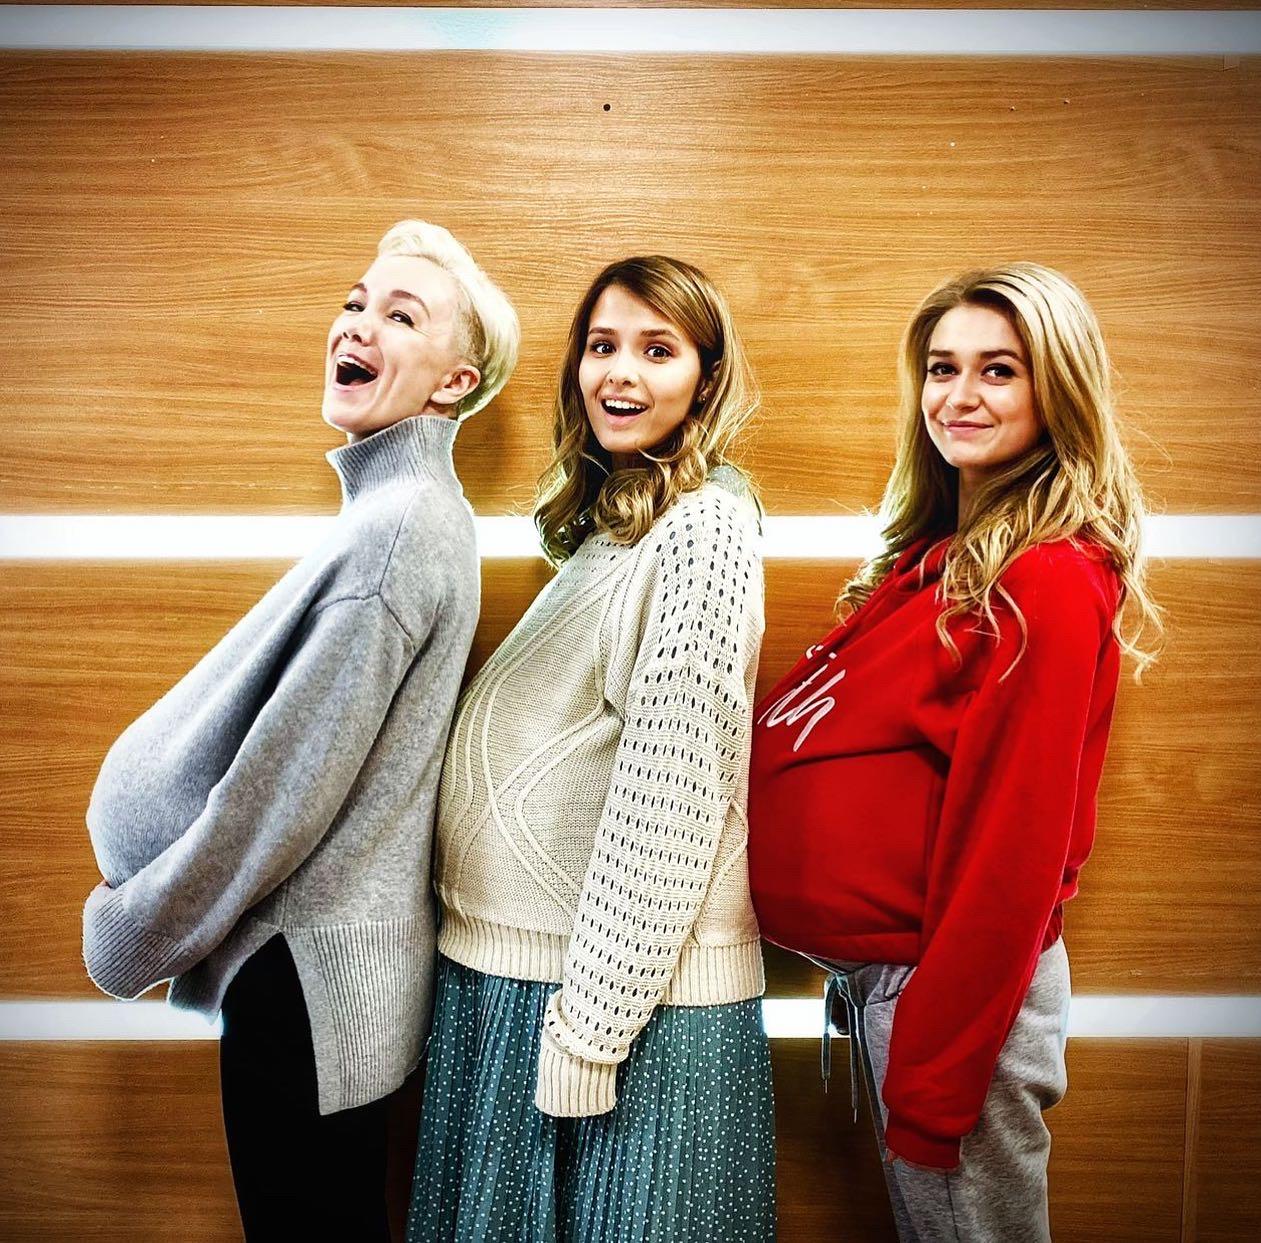 Дарья Мороз, Любовь Аксенова и Настя Калашникова станут мамами четырех детей в новом сезоне «Триады» на ТНТ 